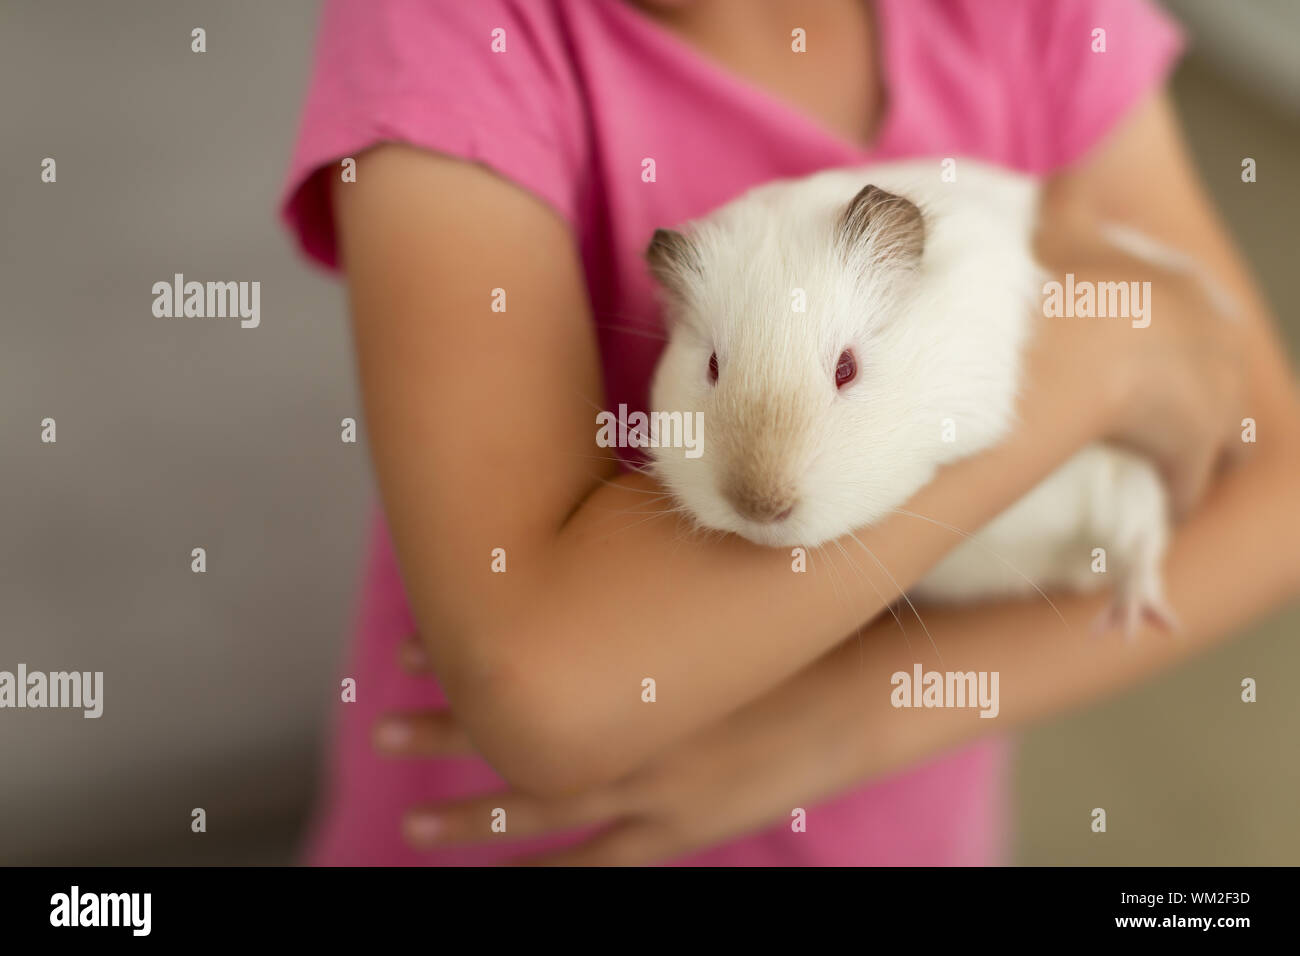 cute white rat in hands vibrant little girl Stock Photo